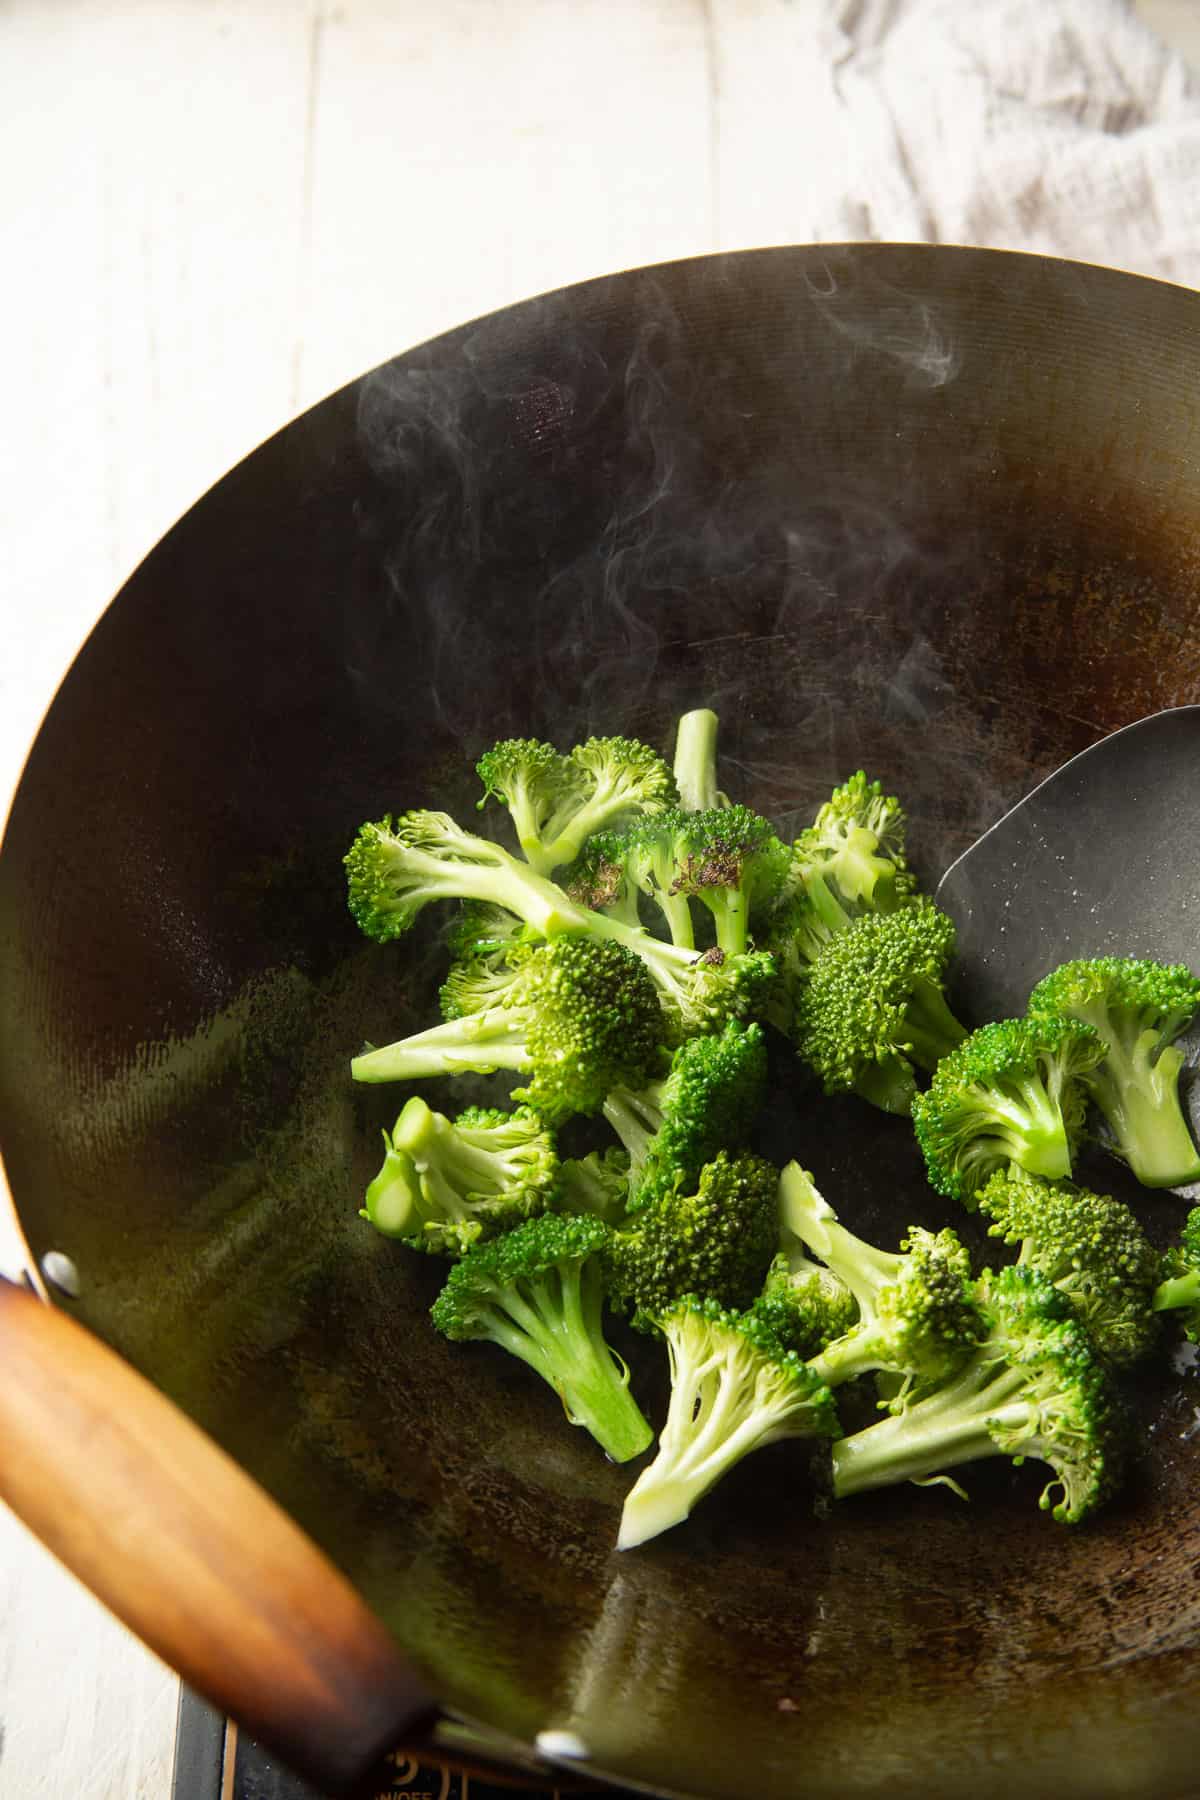 Broccoli stir-frying in a wok.